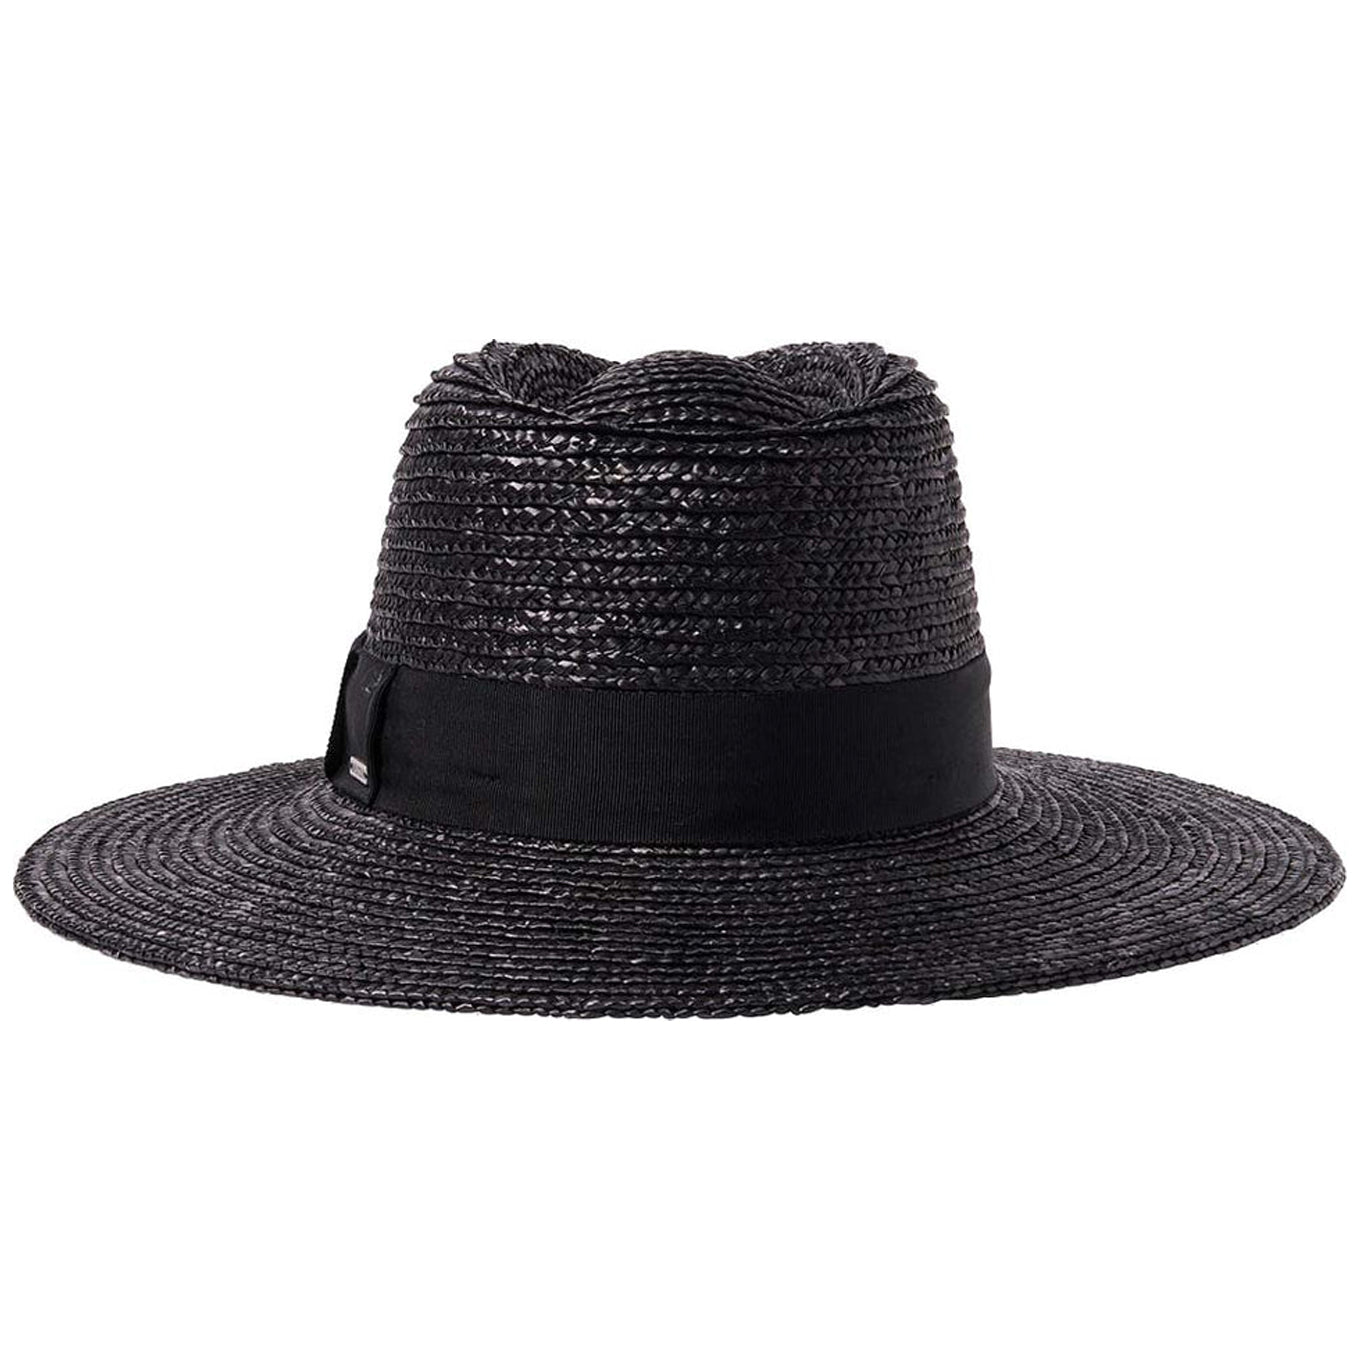 Brixton Women's Hats - Joanna Short Brim Hat - Black - Prairie Supply Co